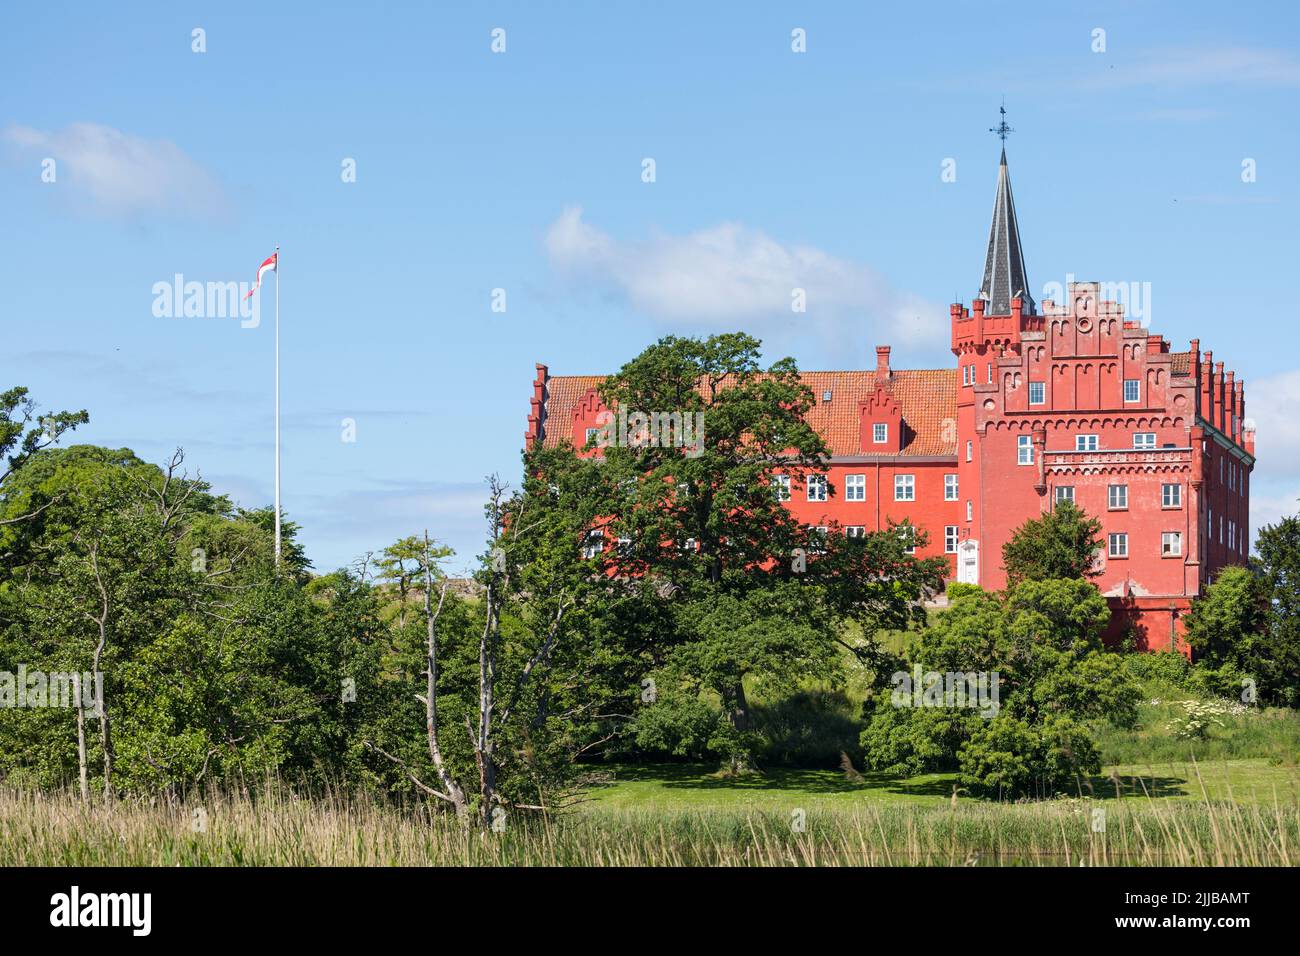 Château de 13th ans à Tranekær, île de Langeland, Danemark Banque D'Images